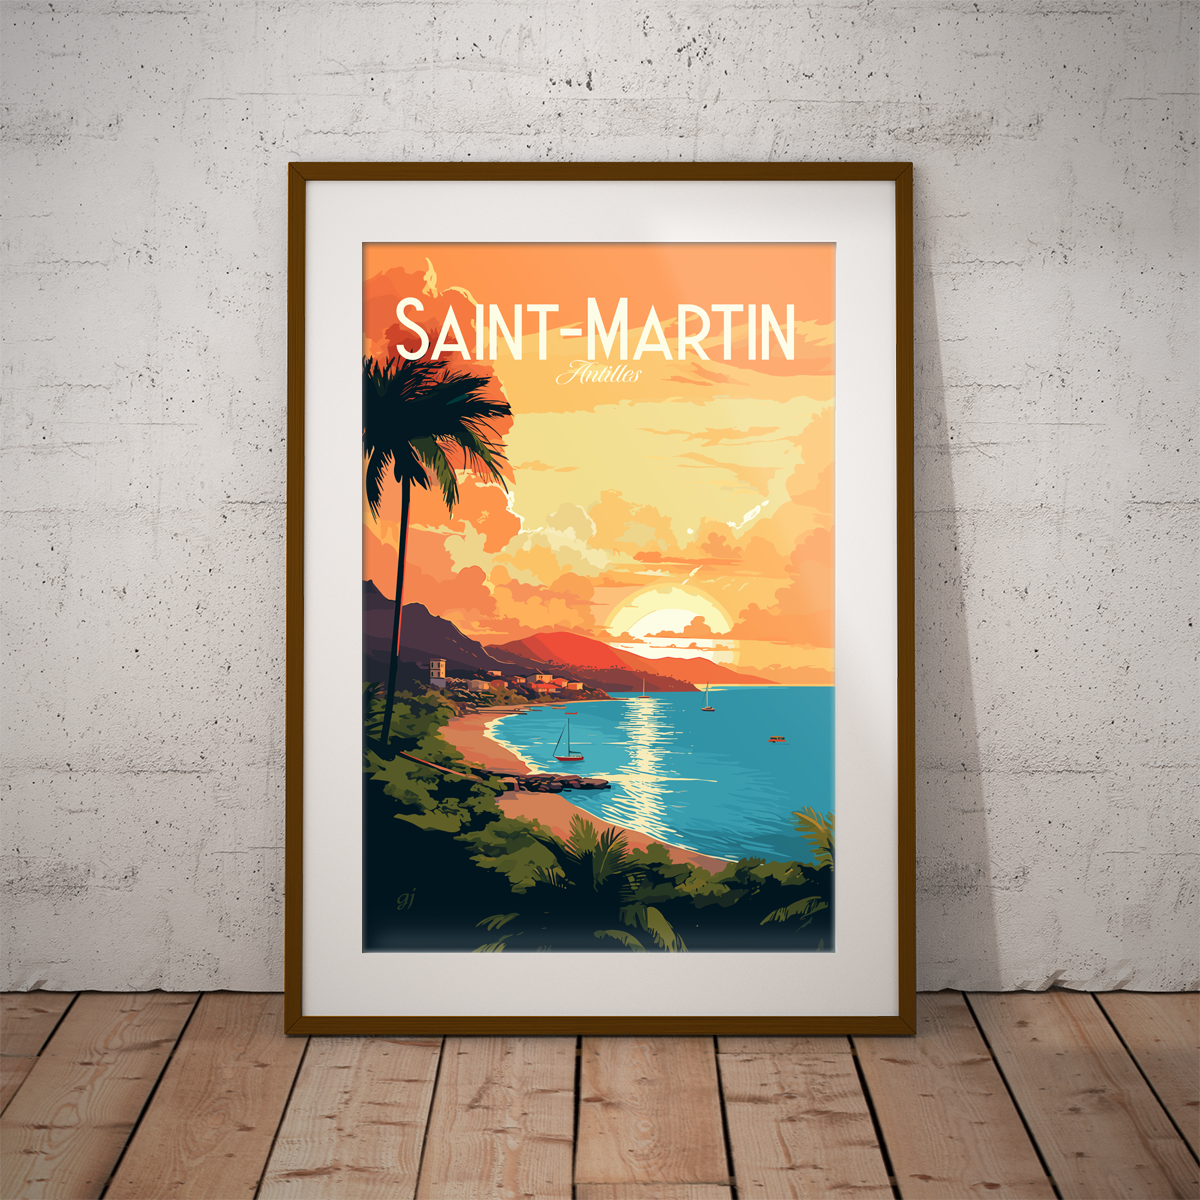 Saint-Martin poster by bon voyage design